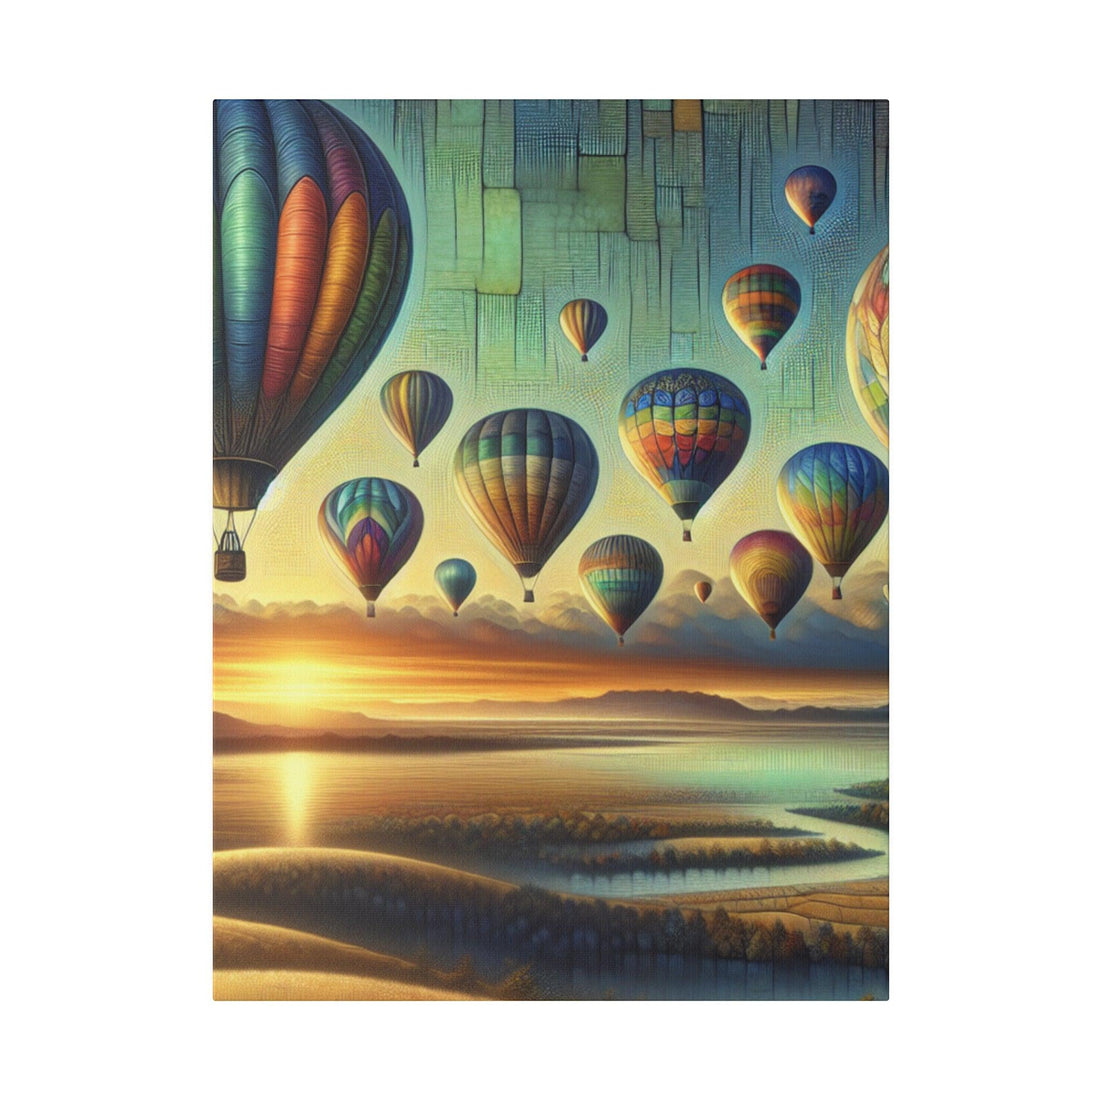 "Aloft Dreams: A Hot Air Balloon Canvas Wall Art Collection" - The Alice Gallery